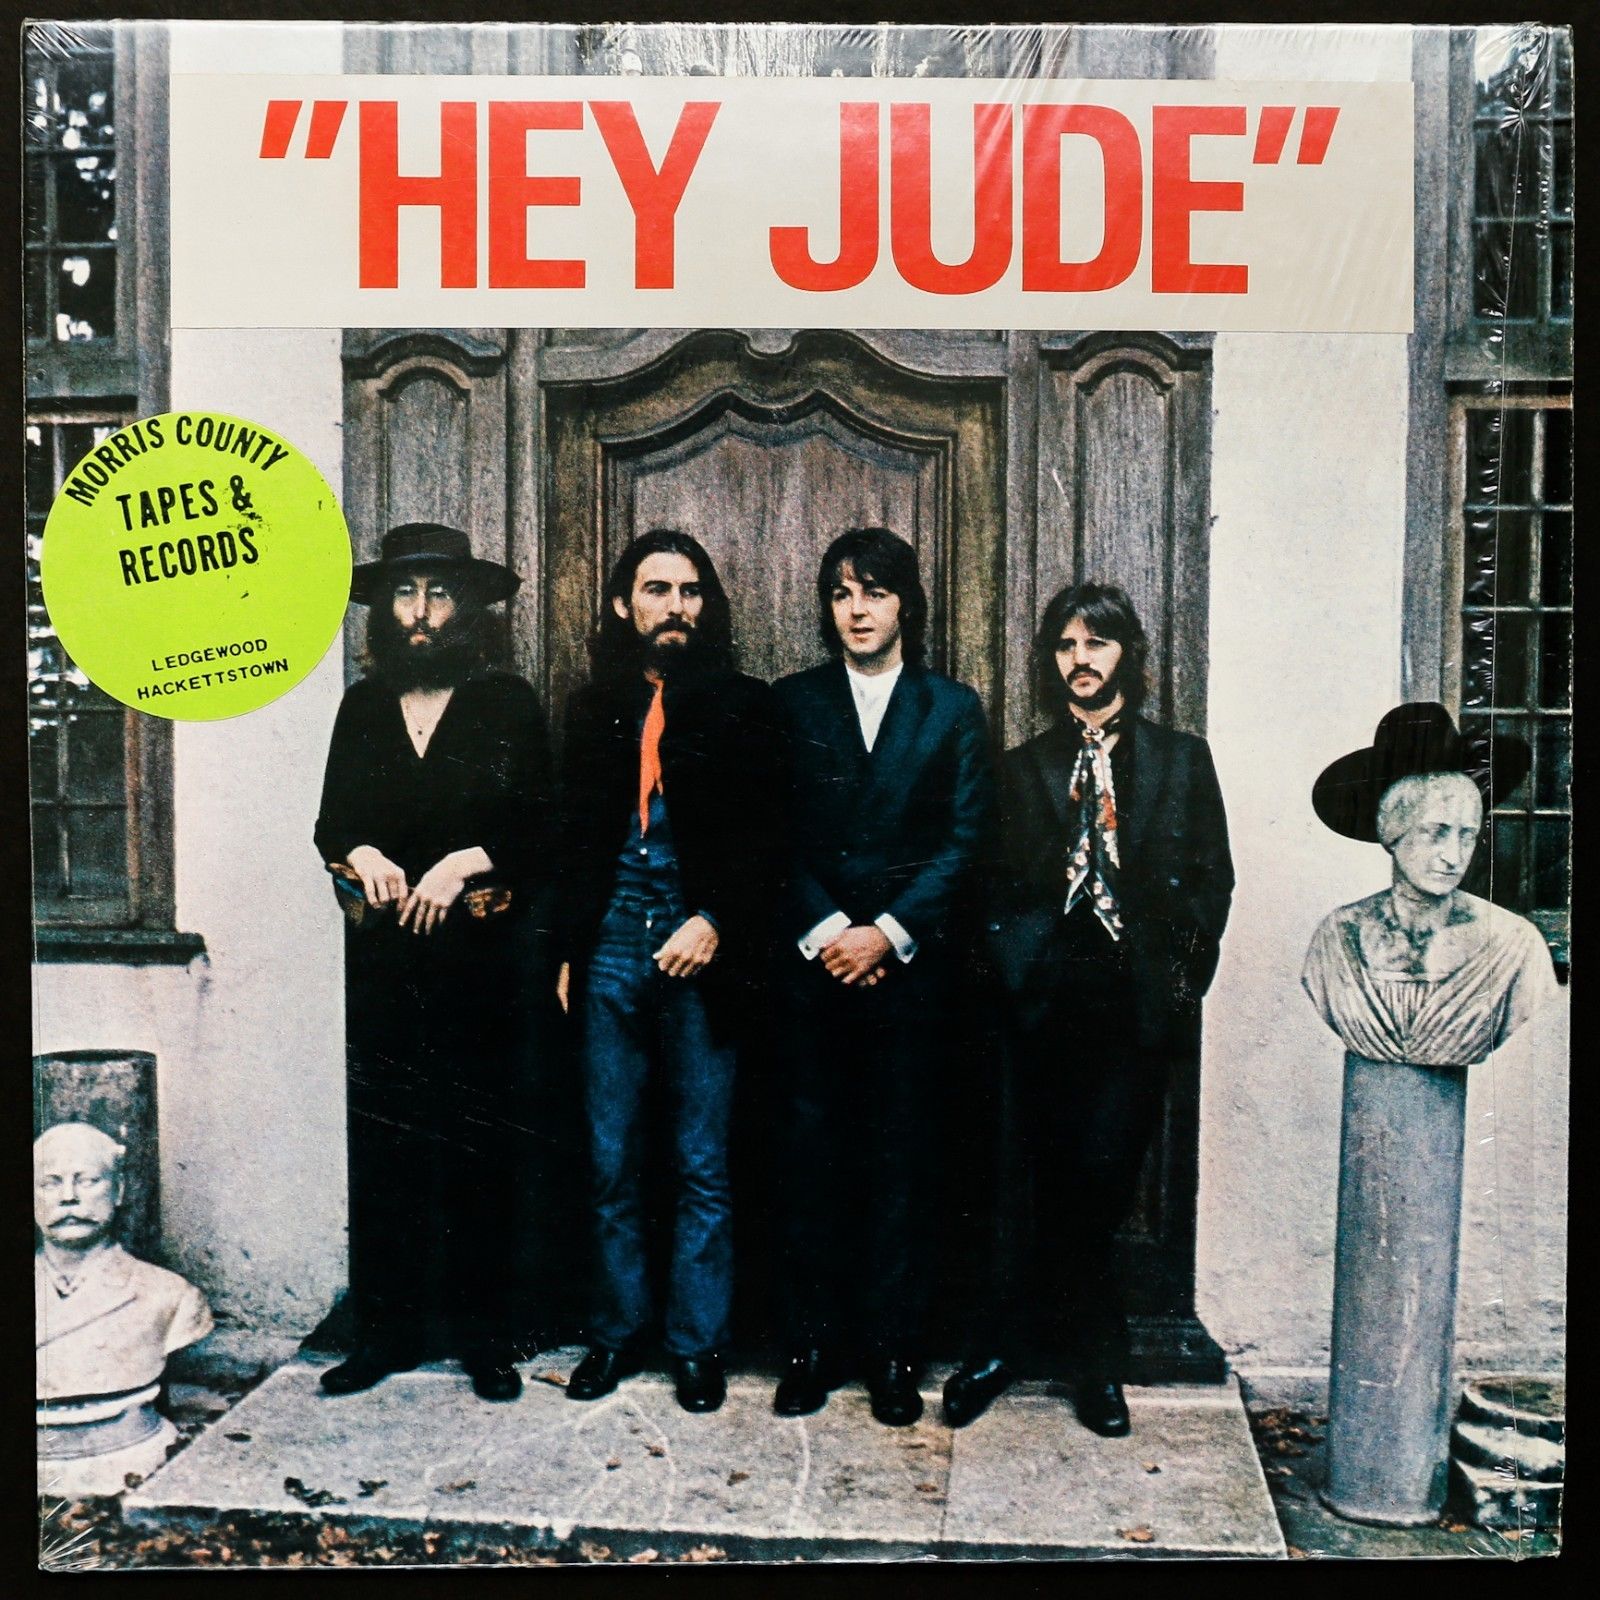 1970 альбомов 1970 года. Альбом Битлз 1970 Хей Джуд. Битлз 1970 Hey Jude. Альбом Битлз Хей Джуд. The Beatles Hey Jude обложка.